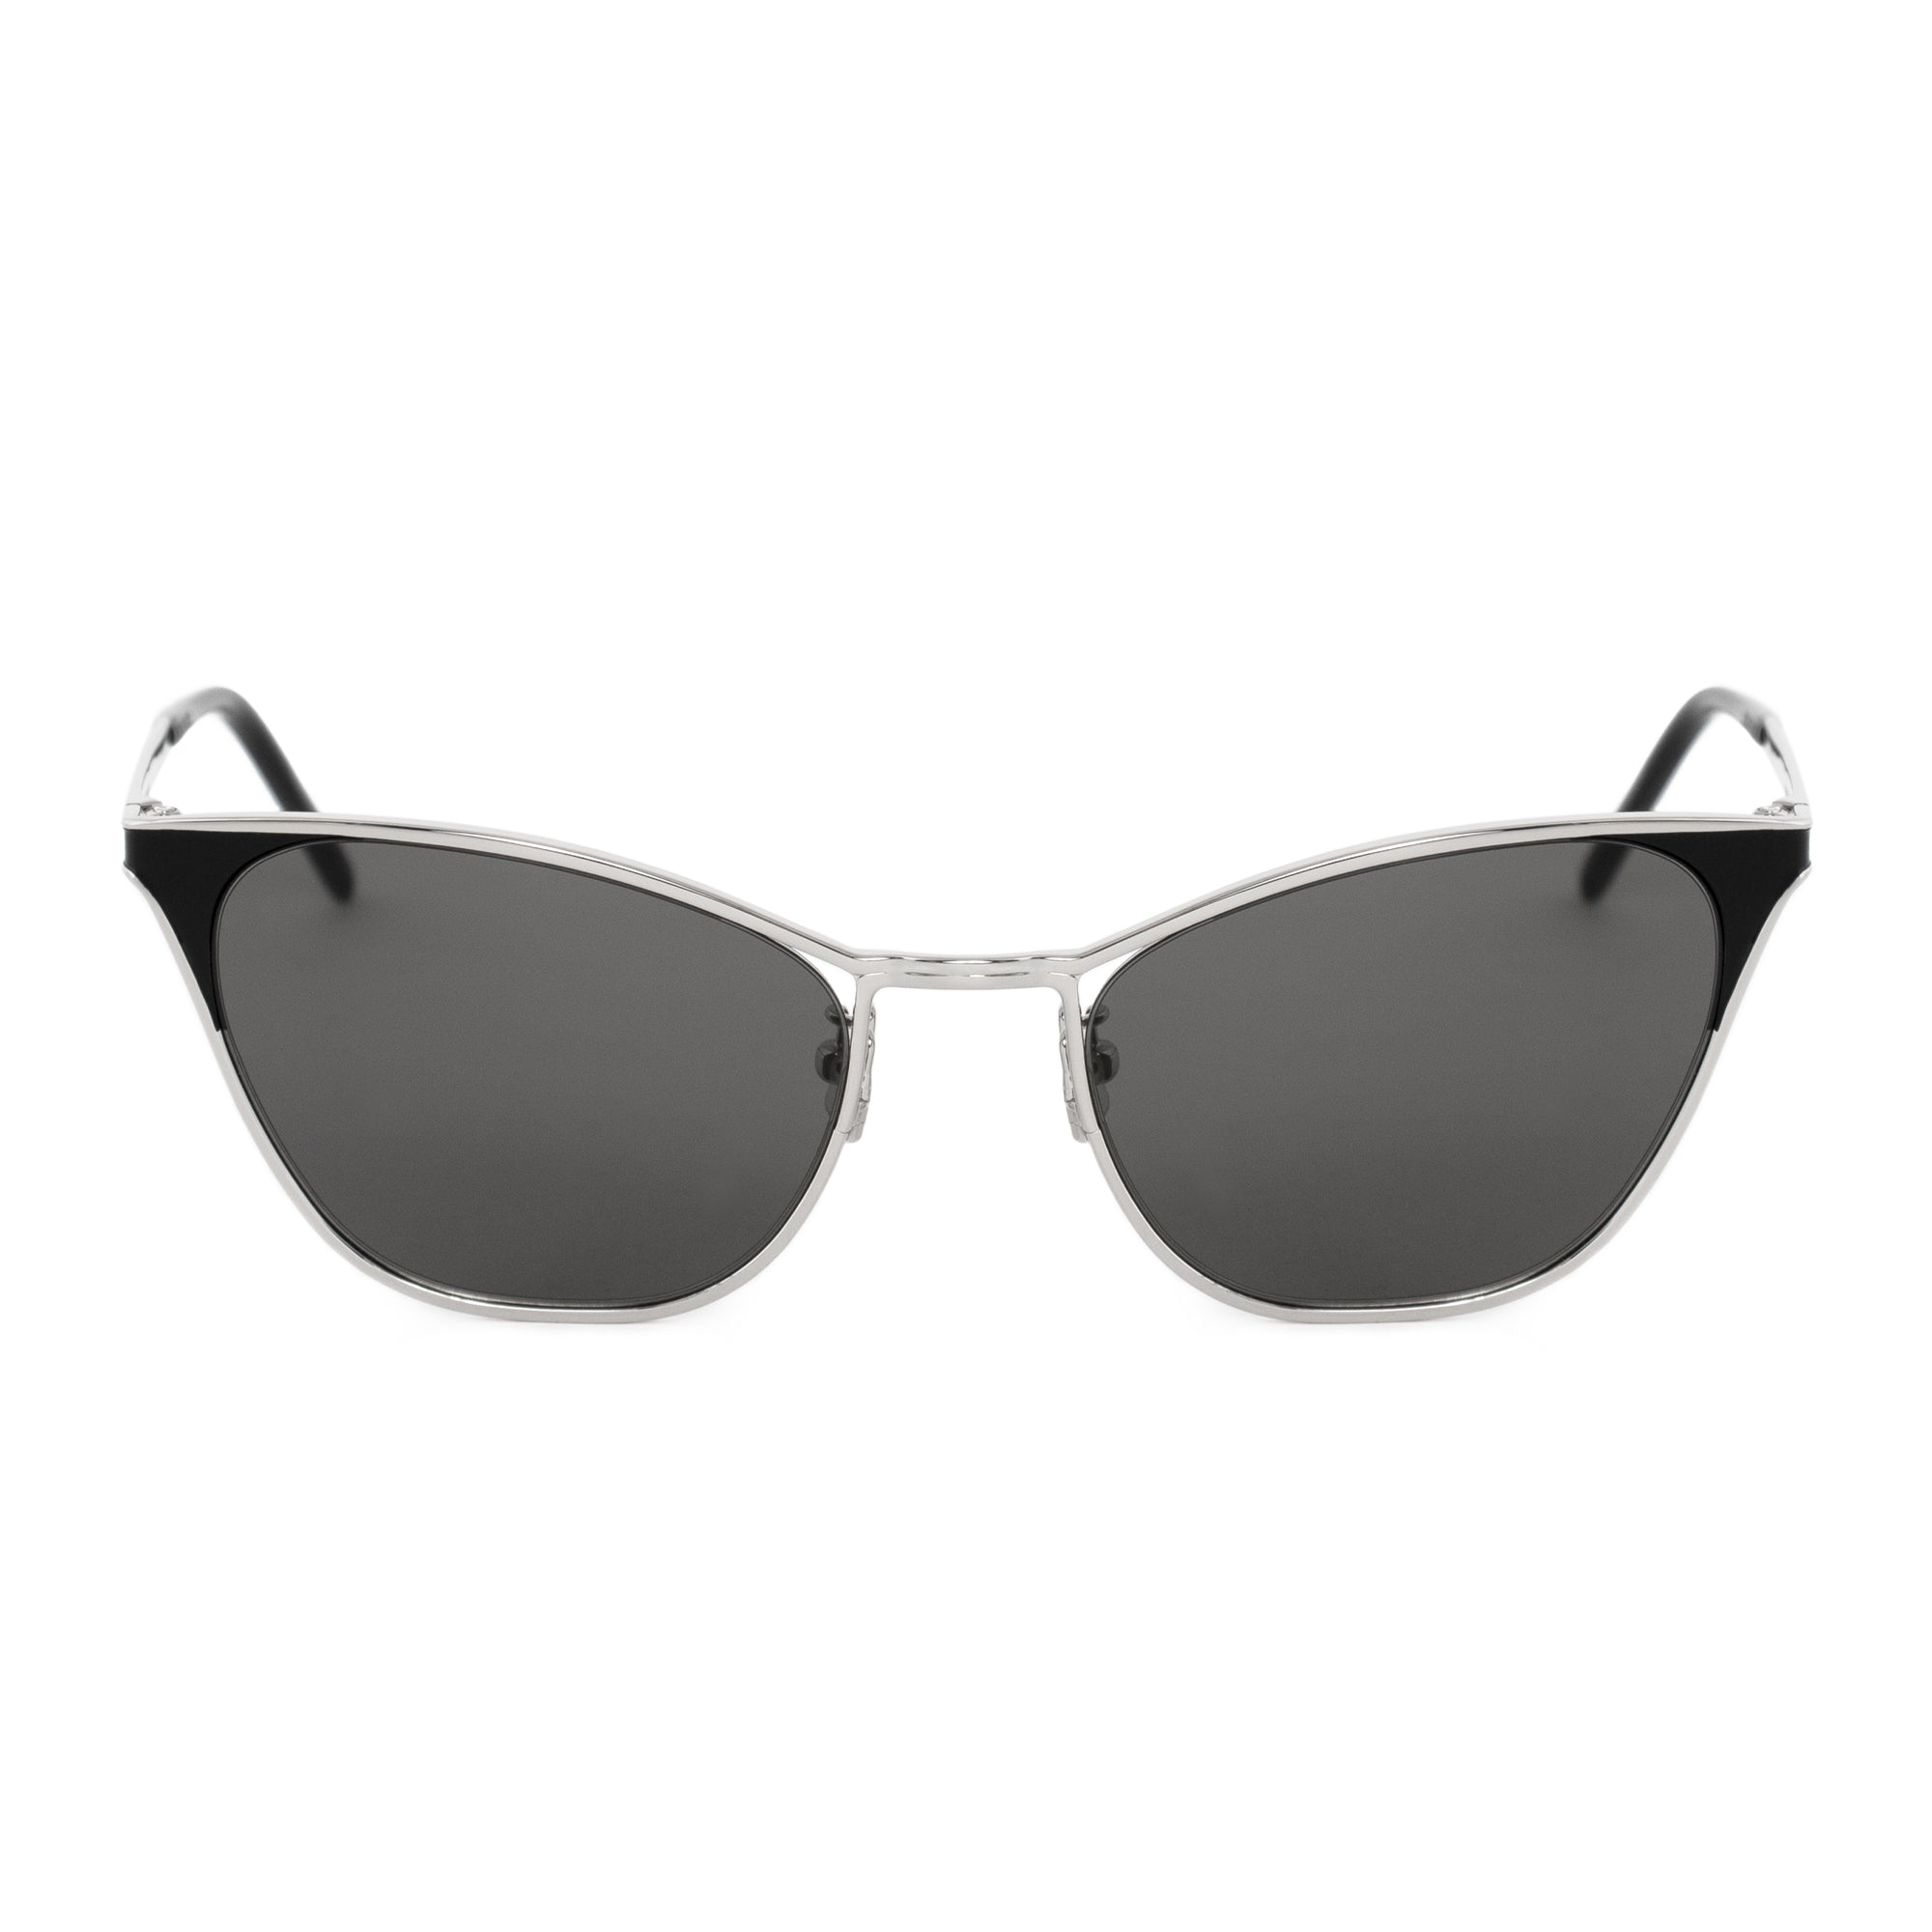 Saint Laurent Cat Eye Sunglasses SL409 001 55